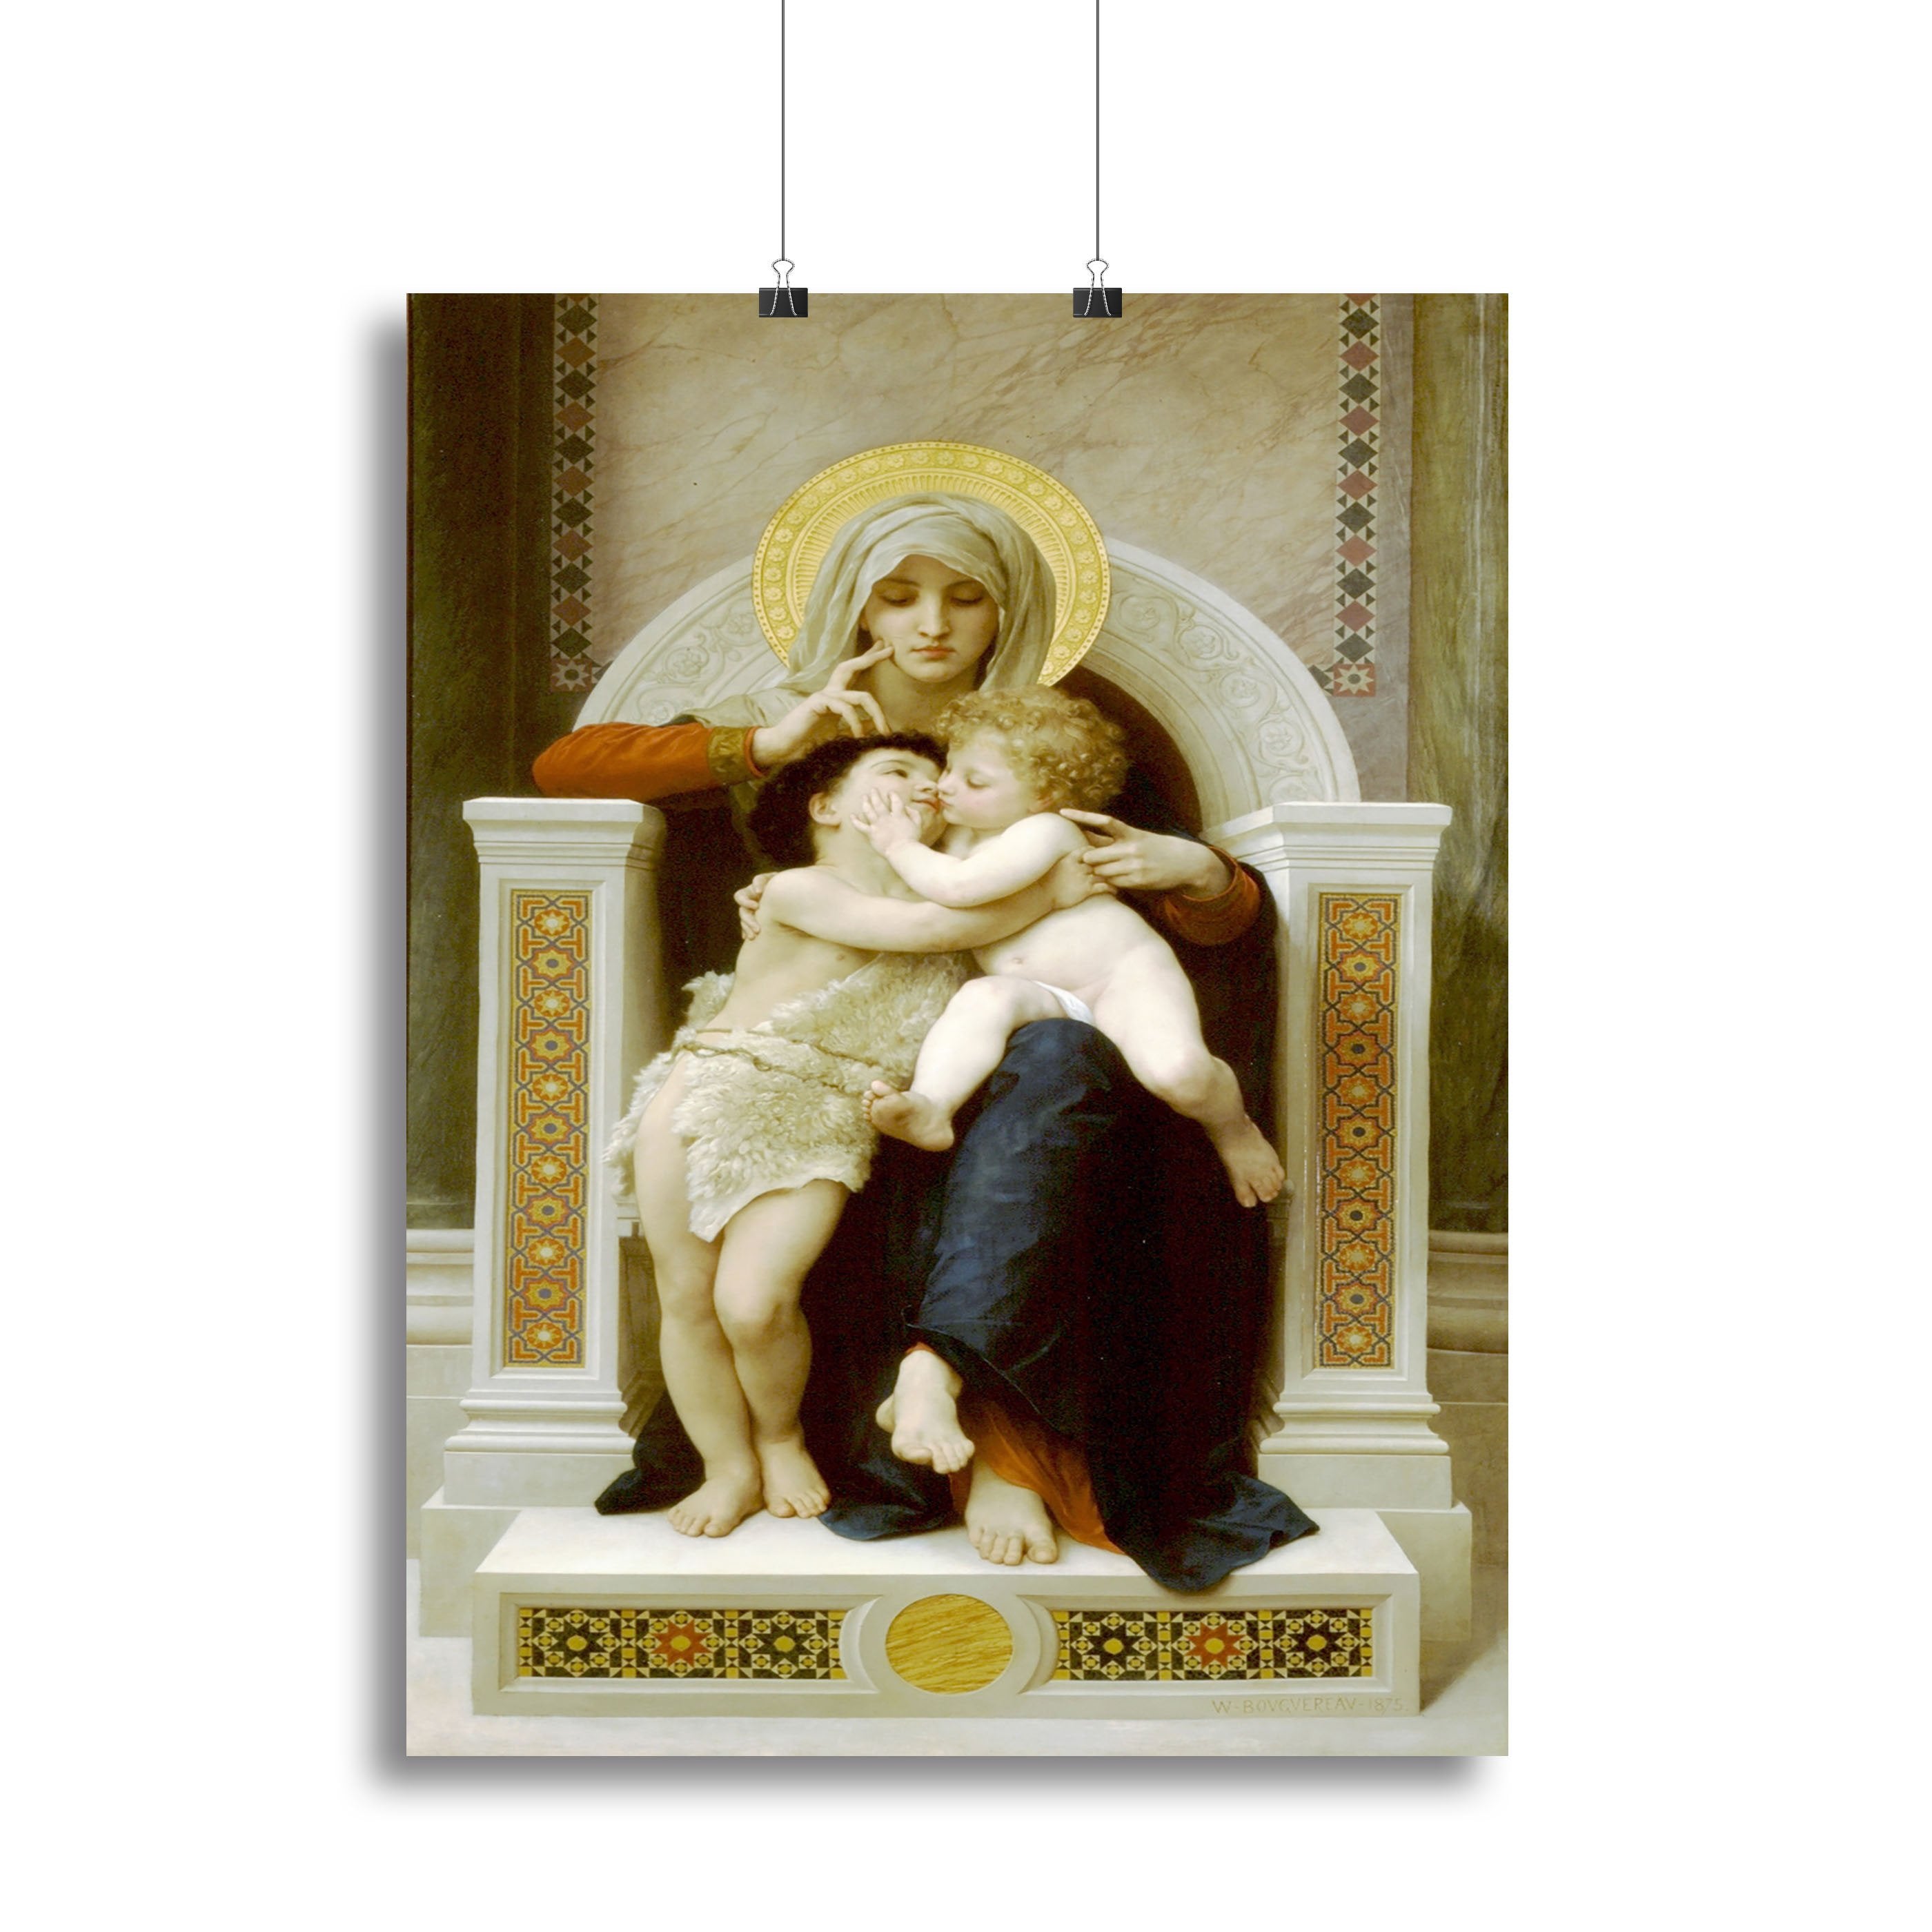 Vierge-Jesus SaintJeanBaptiste 1875 By Bouguereau Canvas Print or Poster